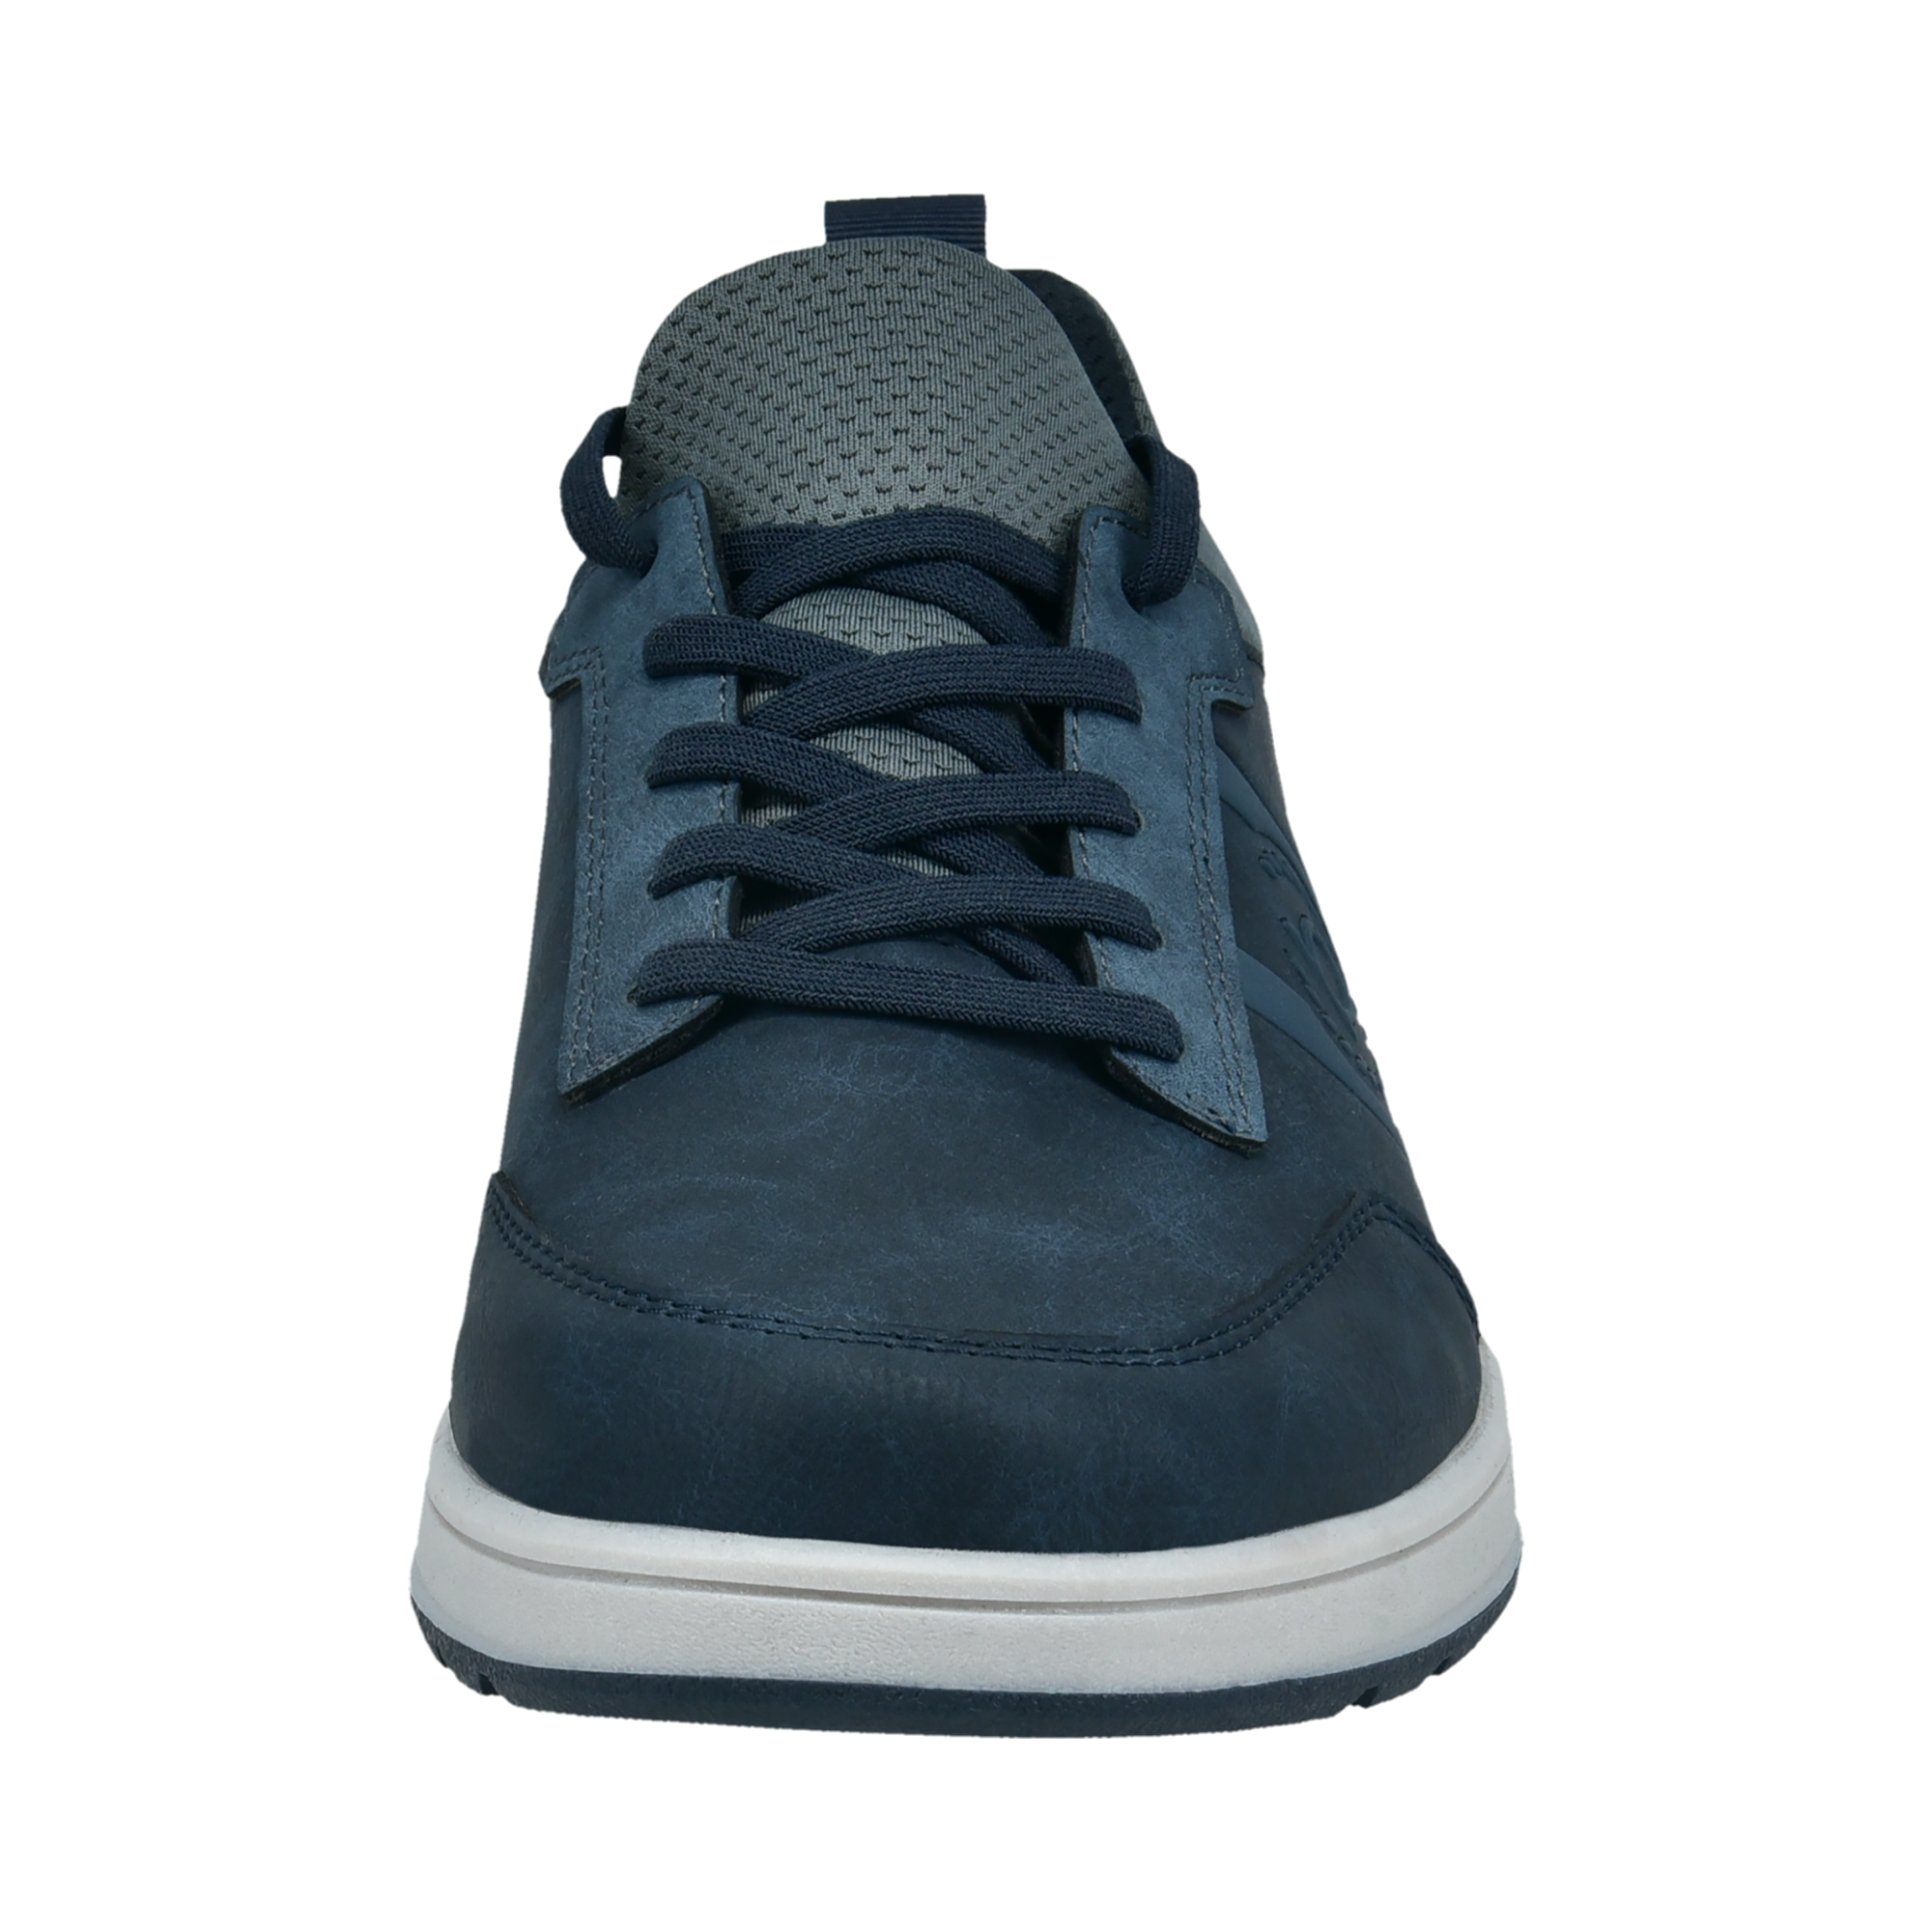 Sneaker dark blue